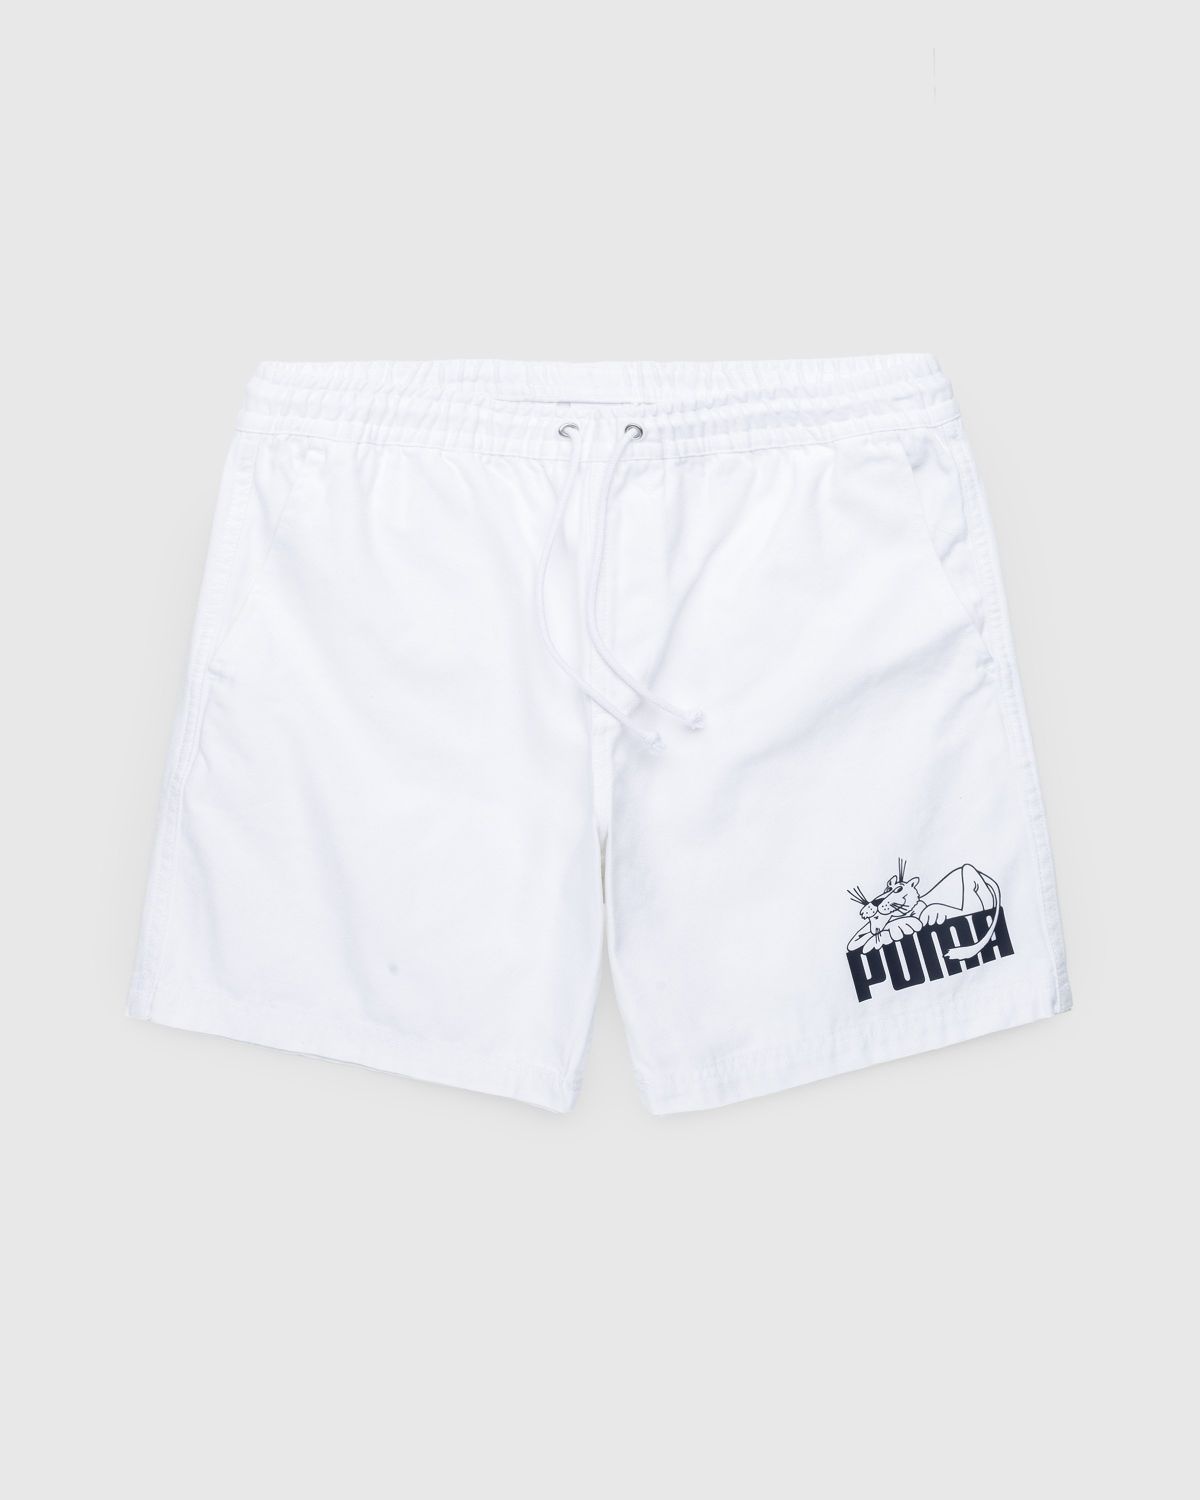 Puma – Shorts White - 1